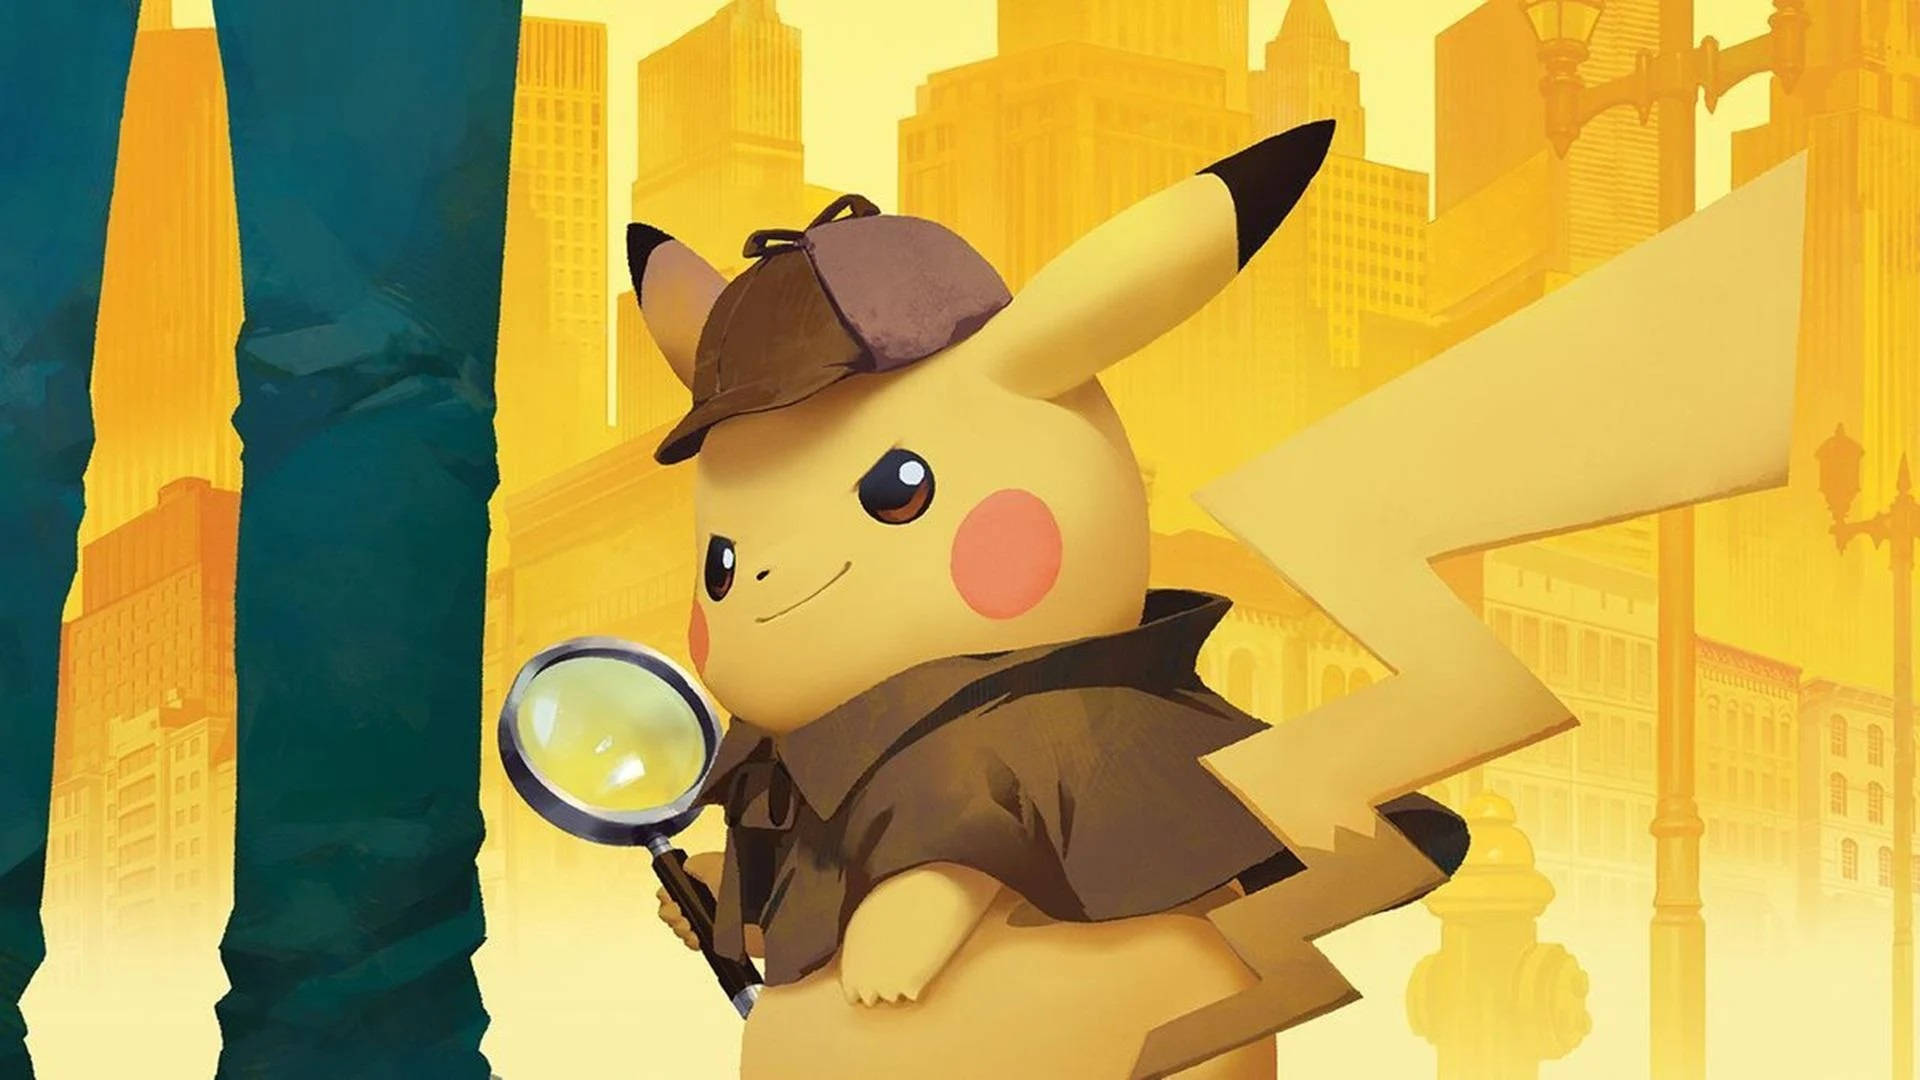 Pokemon Detective Pikachu Video Game Wallpaper